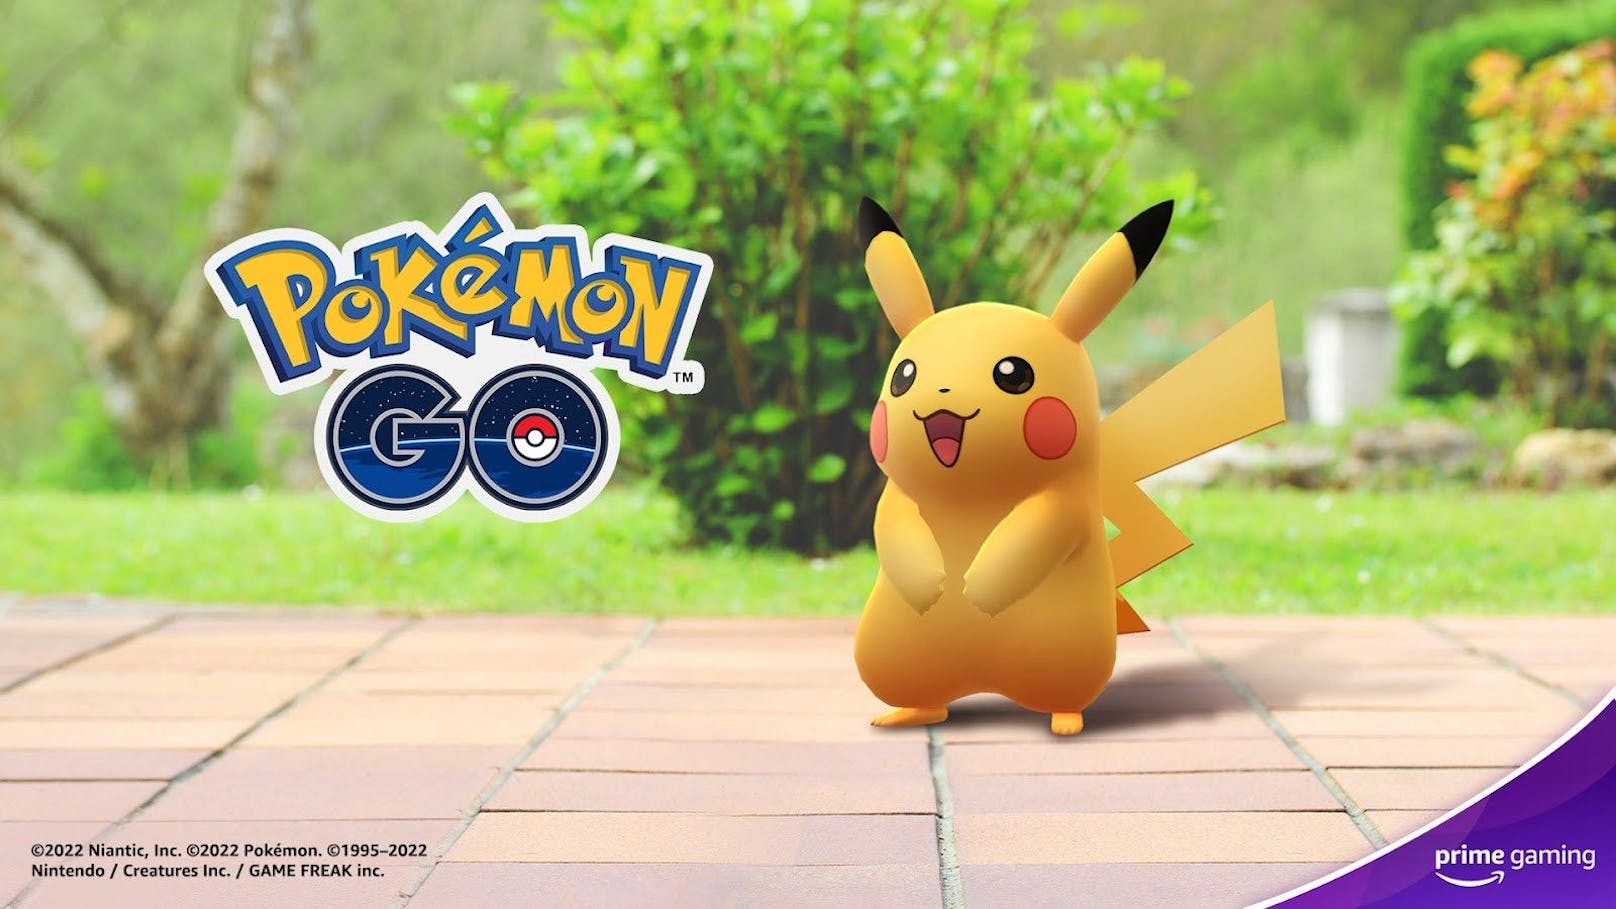 Prime Gaming Partnerschaft mit Niantic für "Pokémon GO" angekündigt.